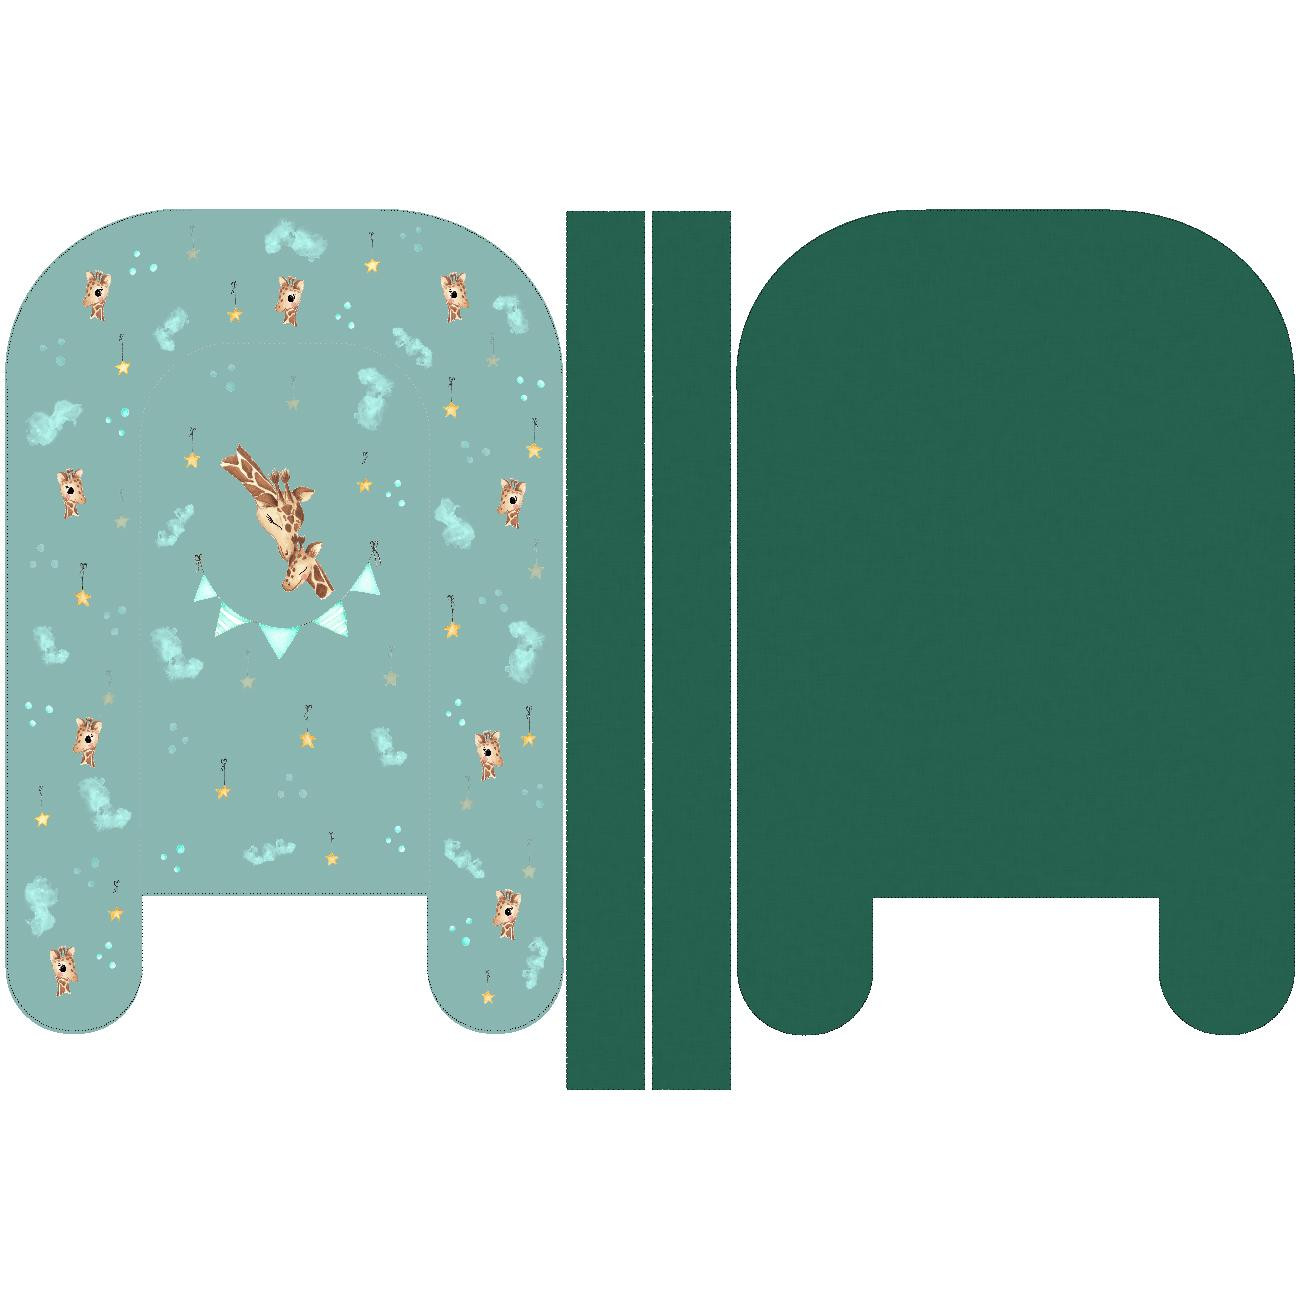 BABY NEST - GIRAFFE / green - sewing set